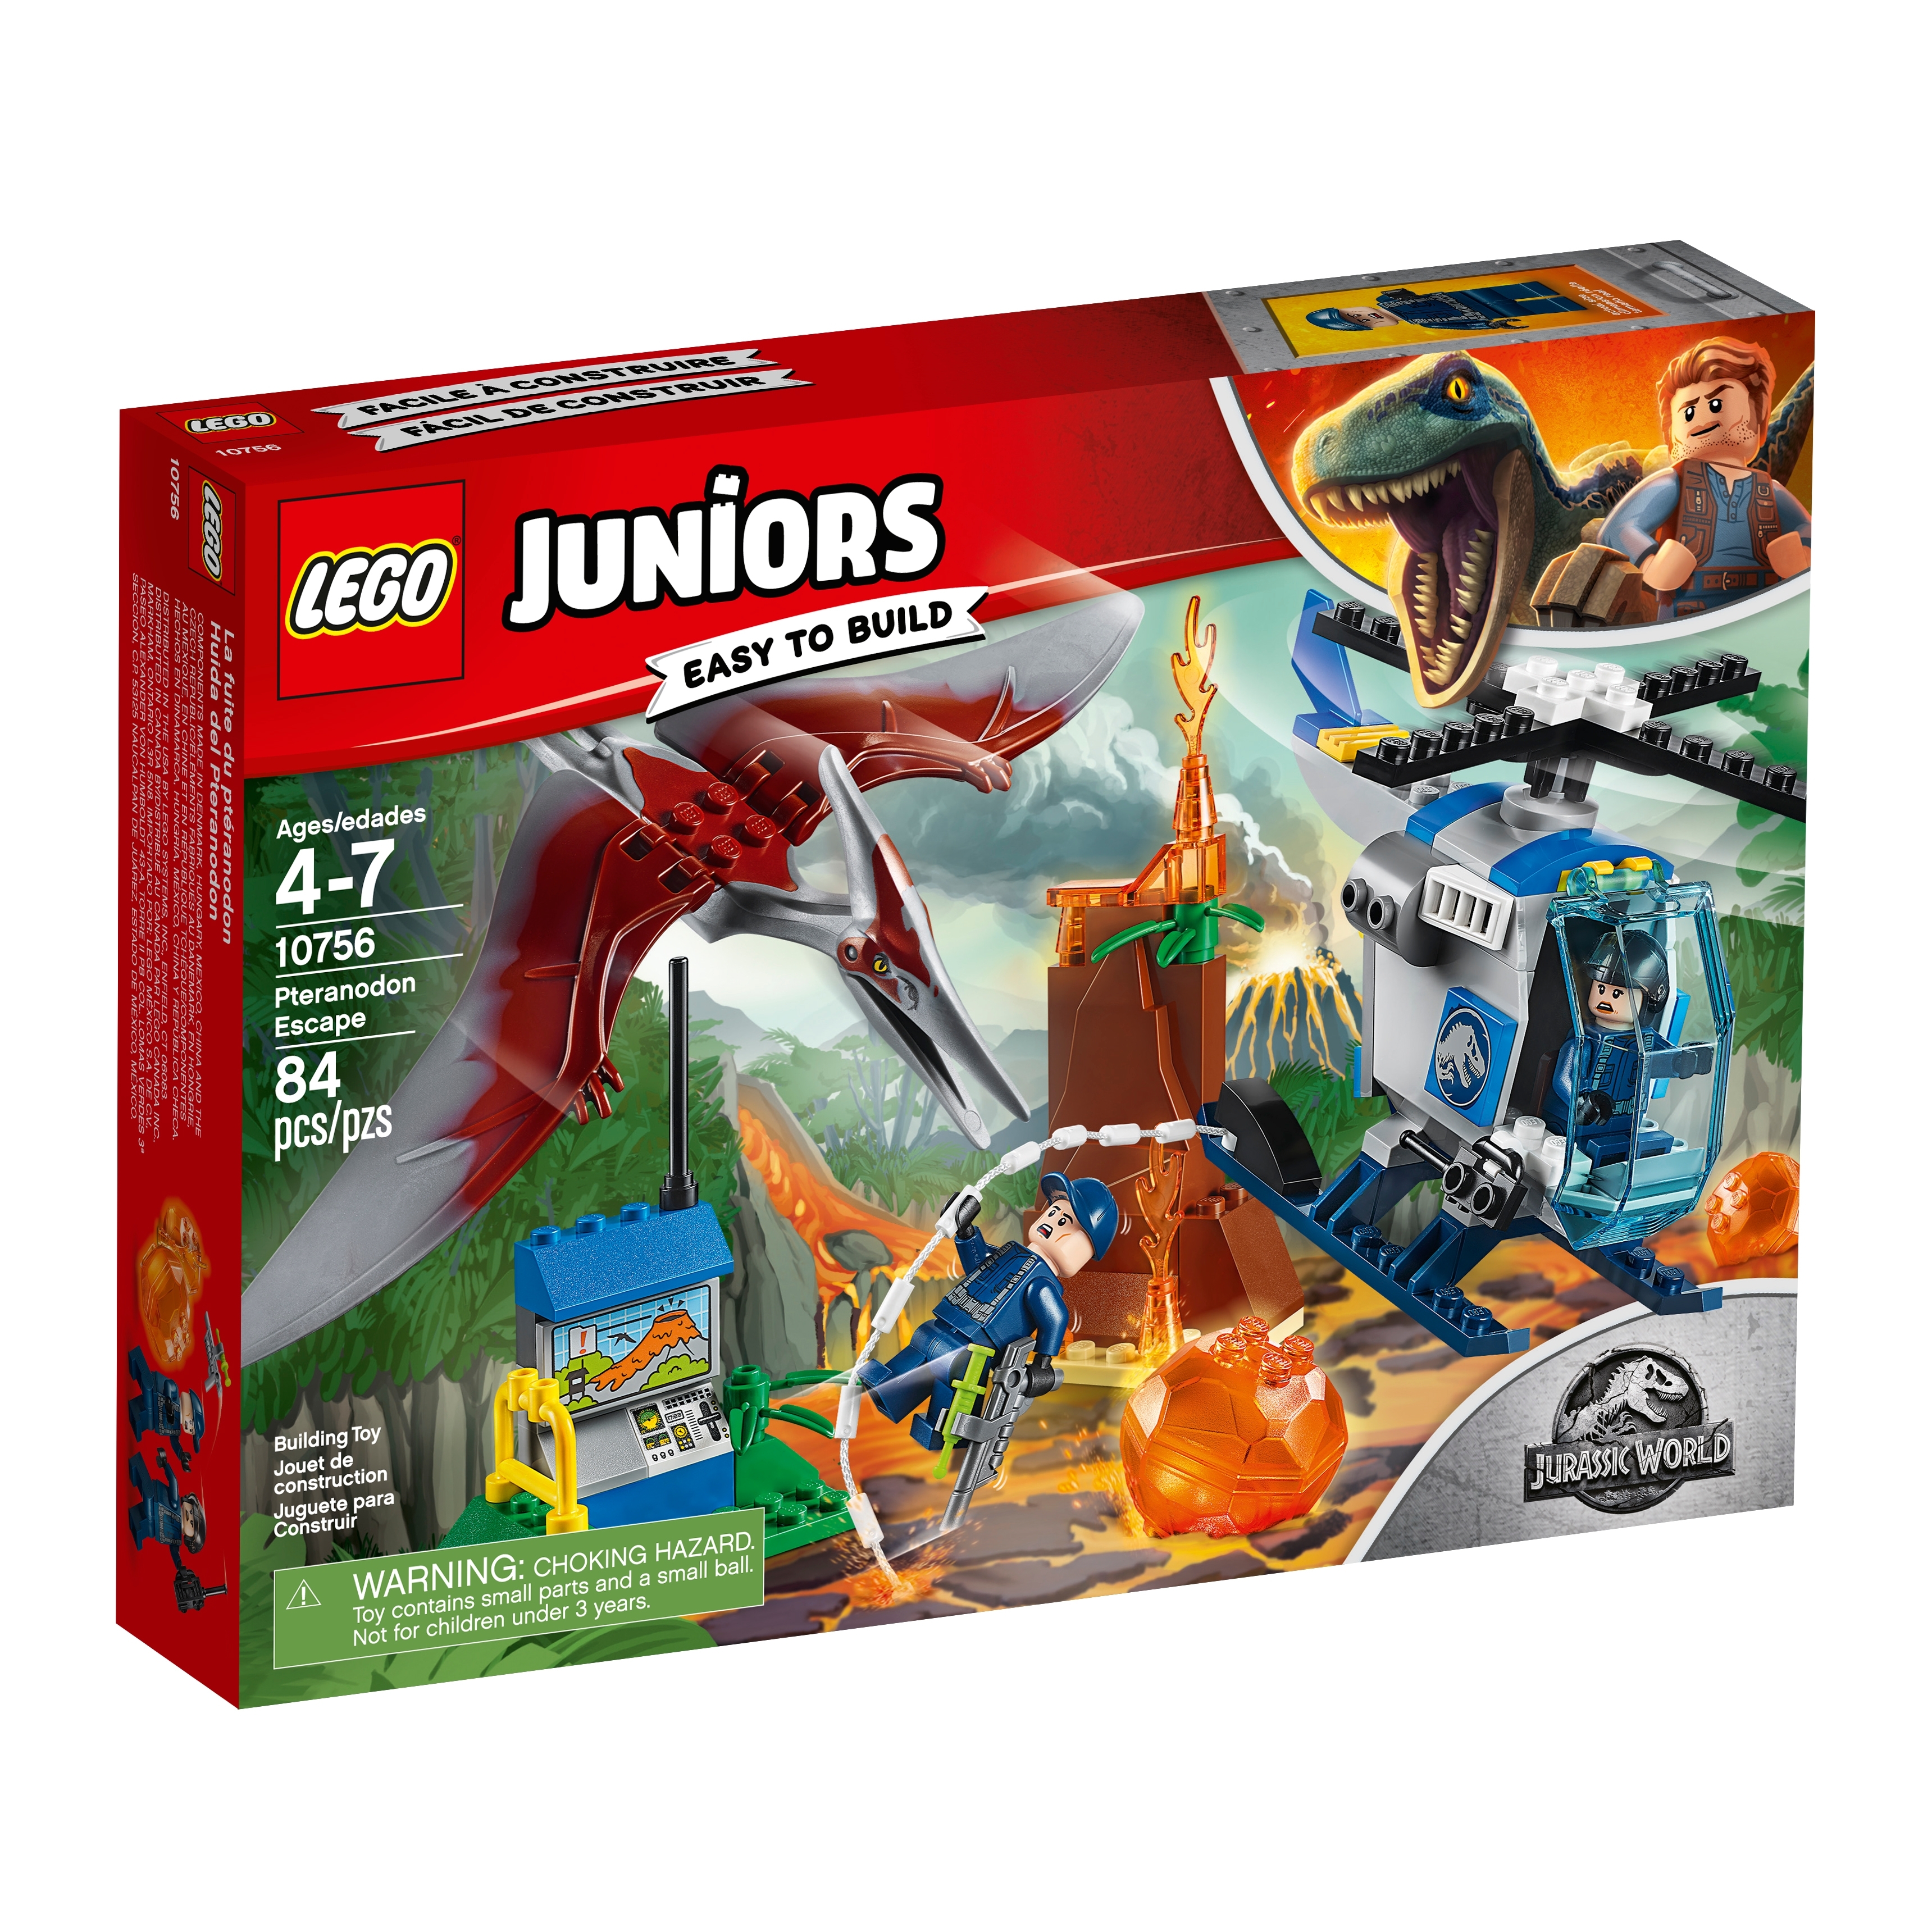 10756 LEGO Juniors Pteranodon Escape Jurassic World 84 Pieces Age 4 2018! 